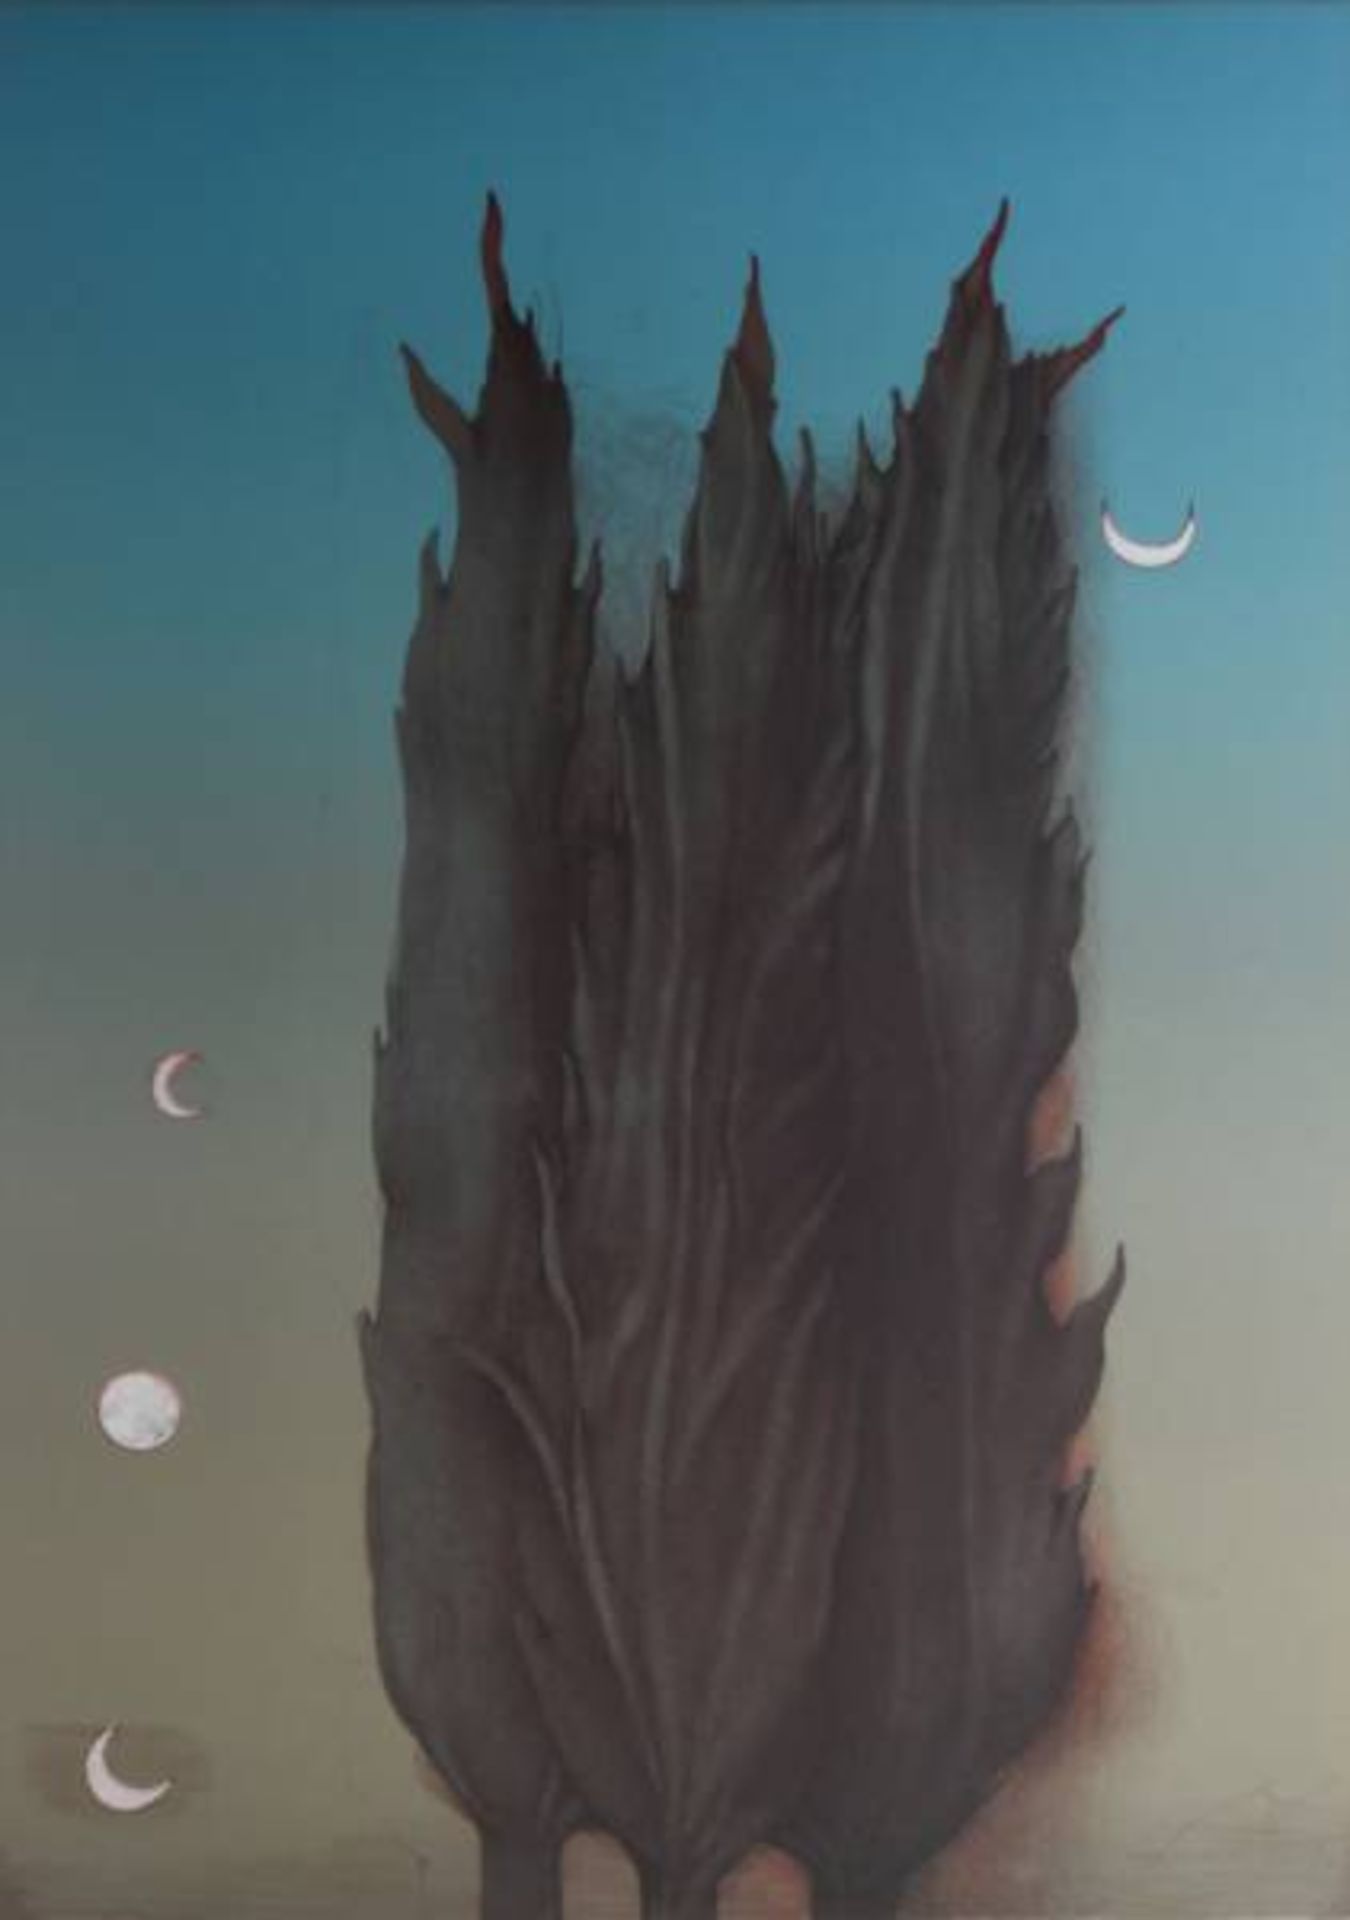 BRUNI Bruno (1935 Gradara) "Bäume in der Nacht", umgeben von Nachtvögeln und Mond,